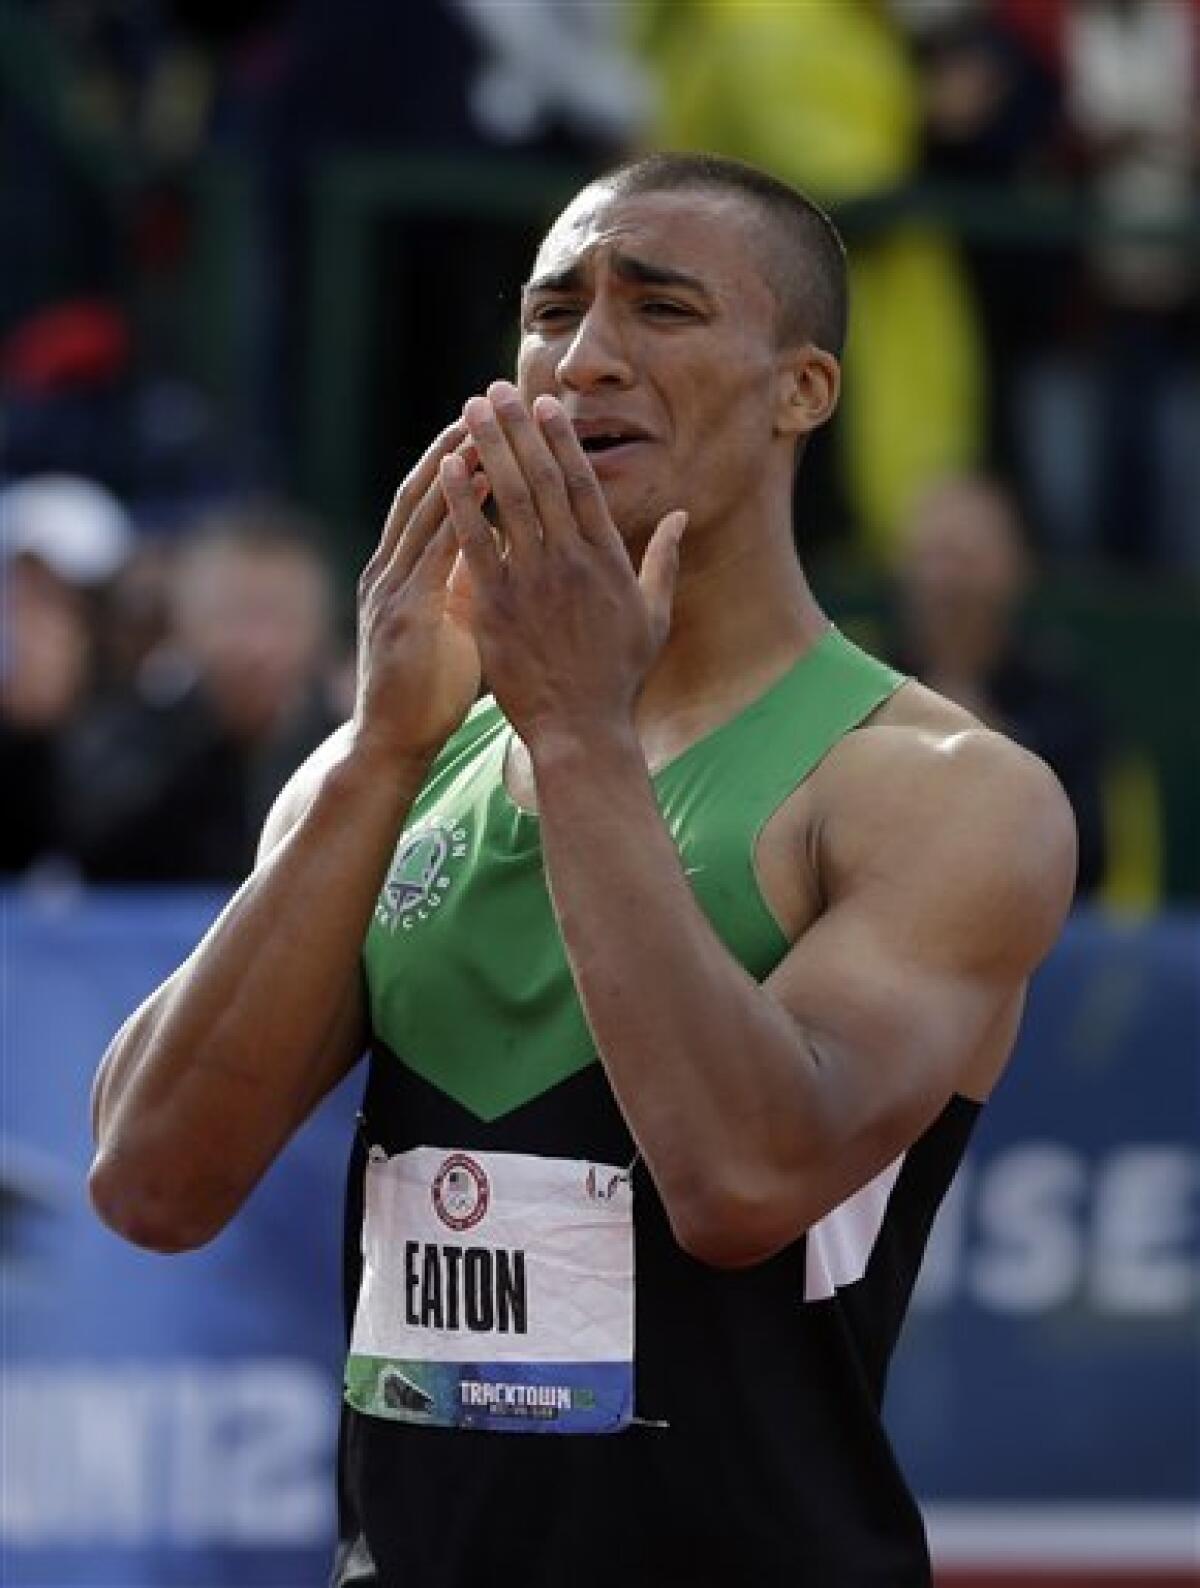 Ashton Eaton sets world record in decathlon - The San Diego Union-Tribune